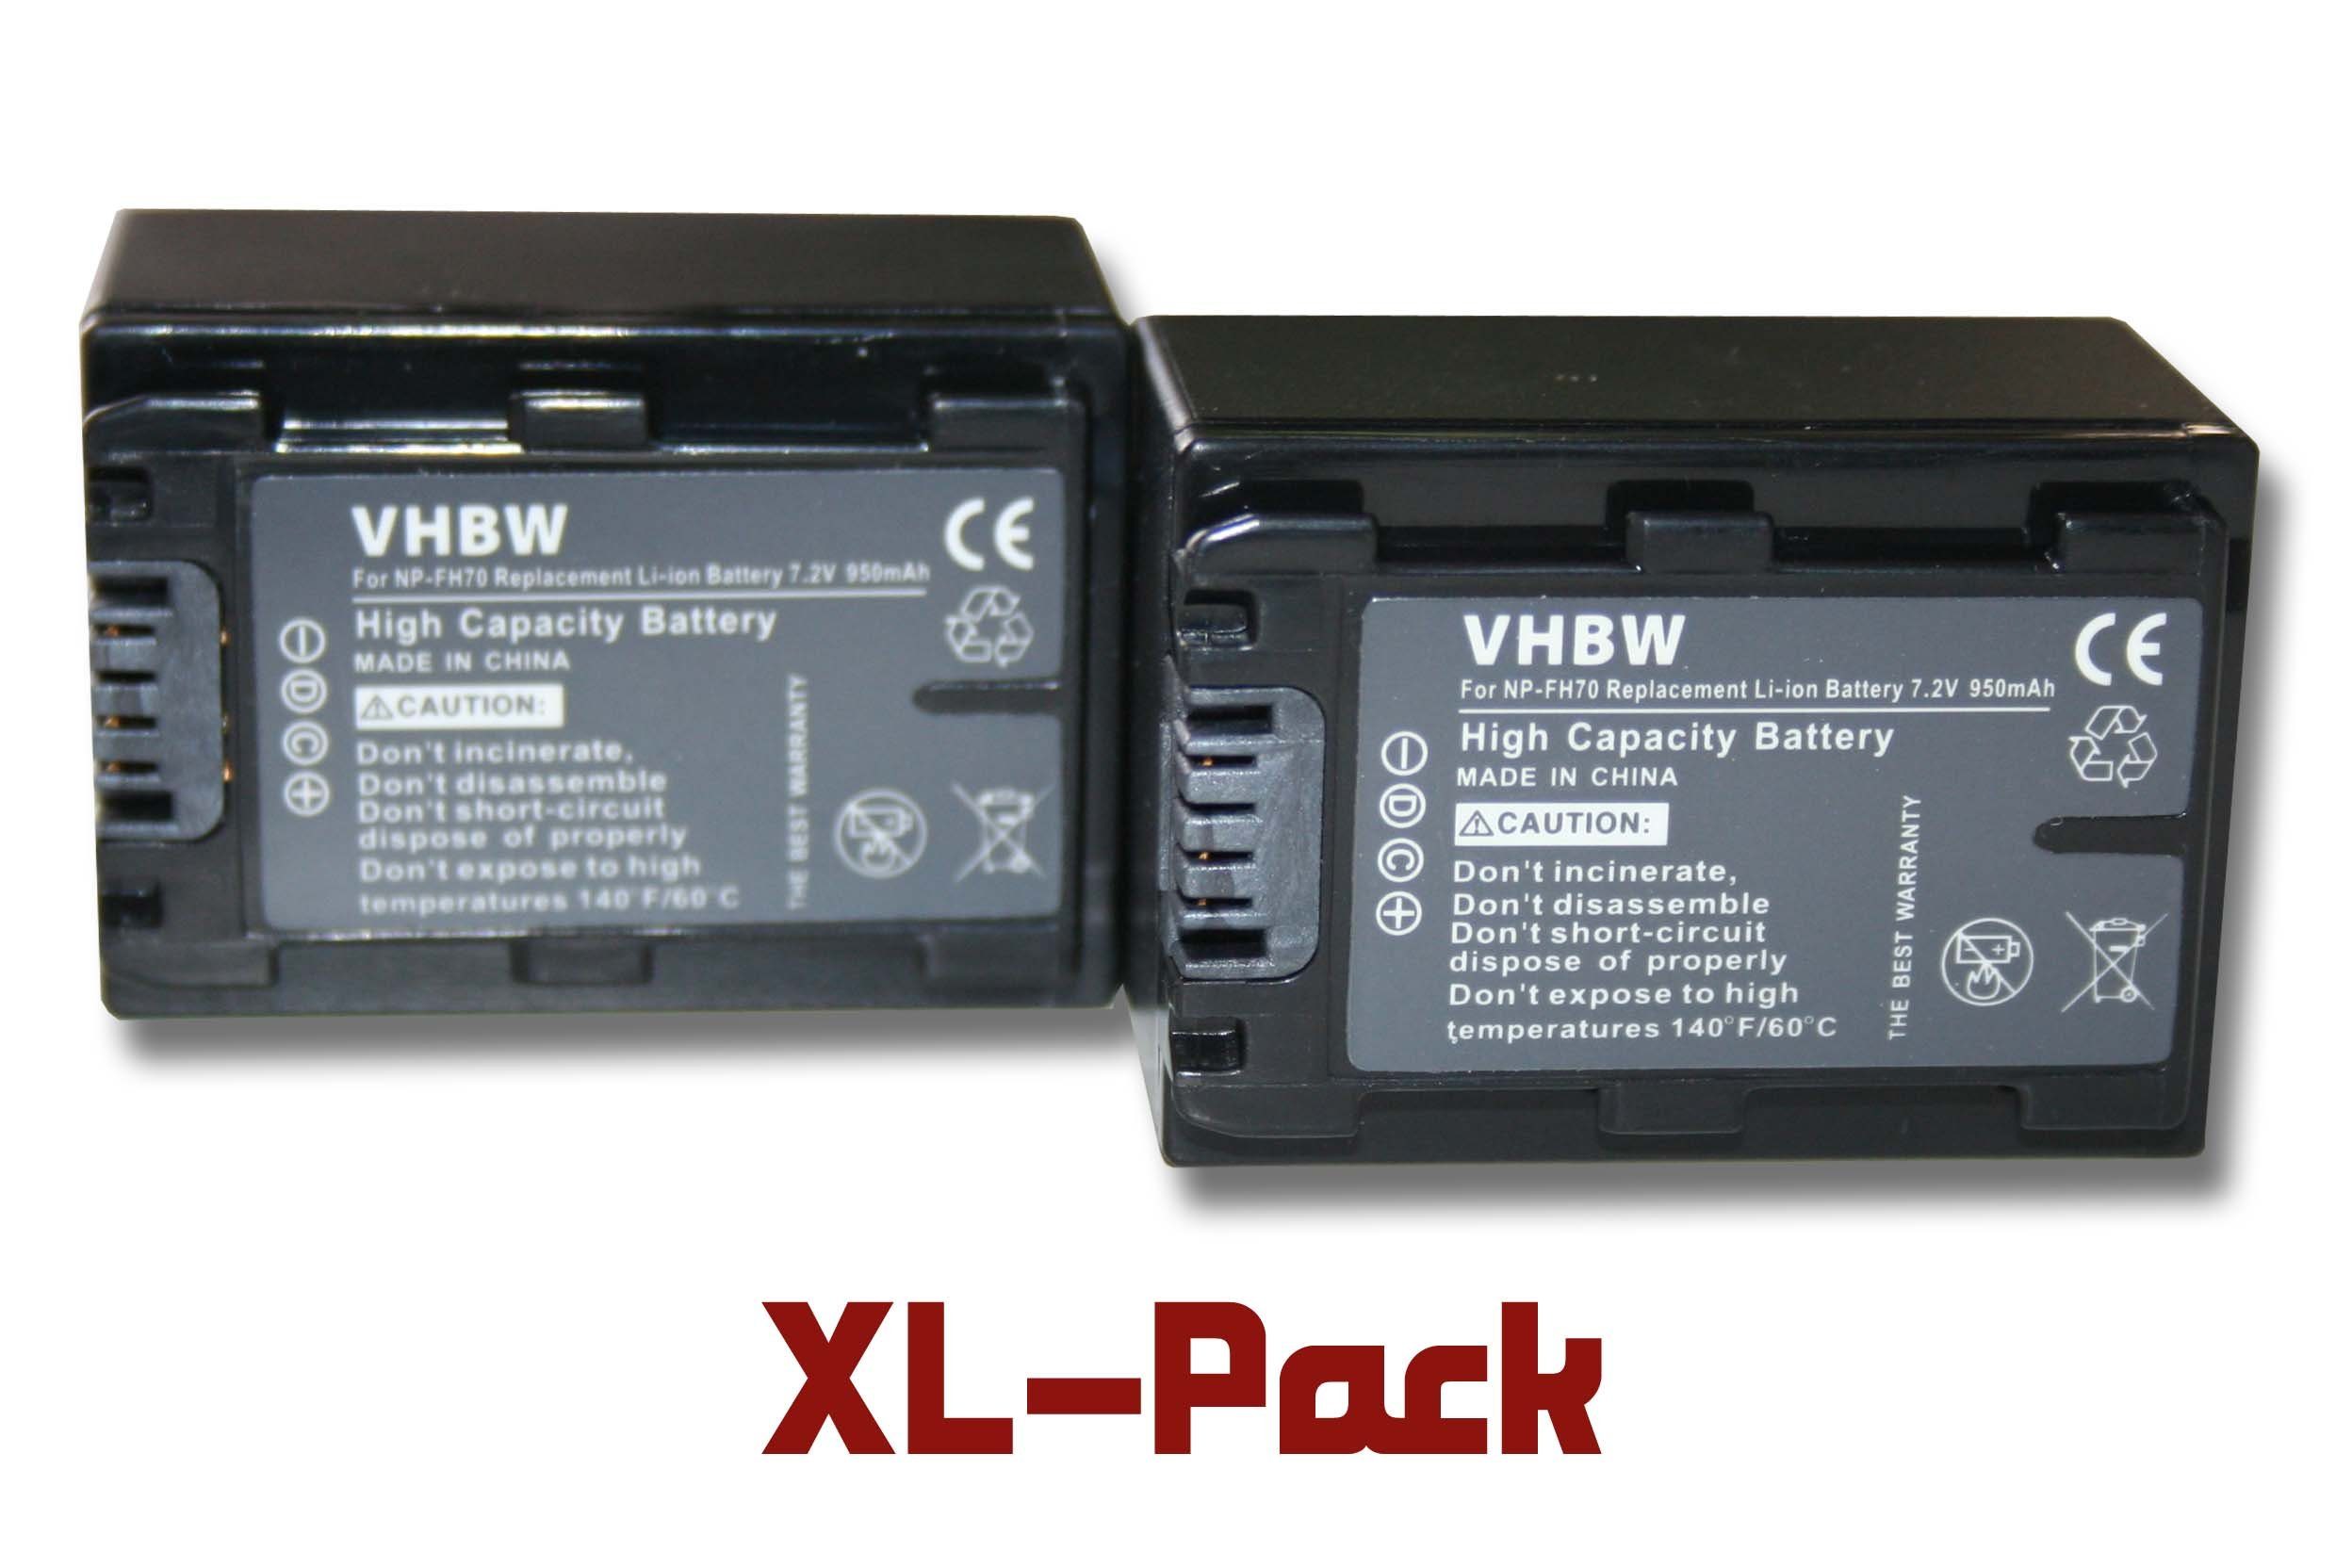 Li-Ion) mAh 7,2V, Kompatibel mit Sony Camcorder DSC-HX100, für Digital passend DSC-HX200V Cybershot 950 DSC-HX100V, Kamera-Akku vhbw (950mAh,